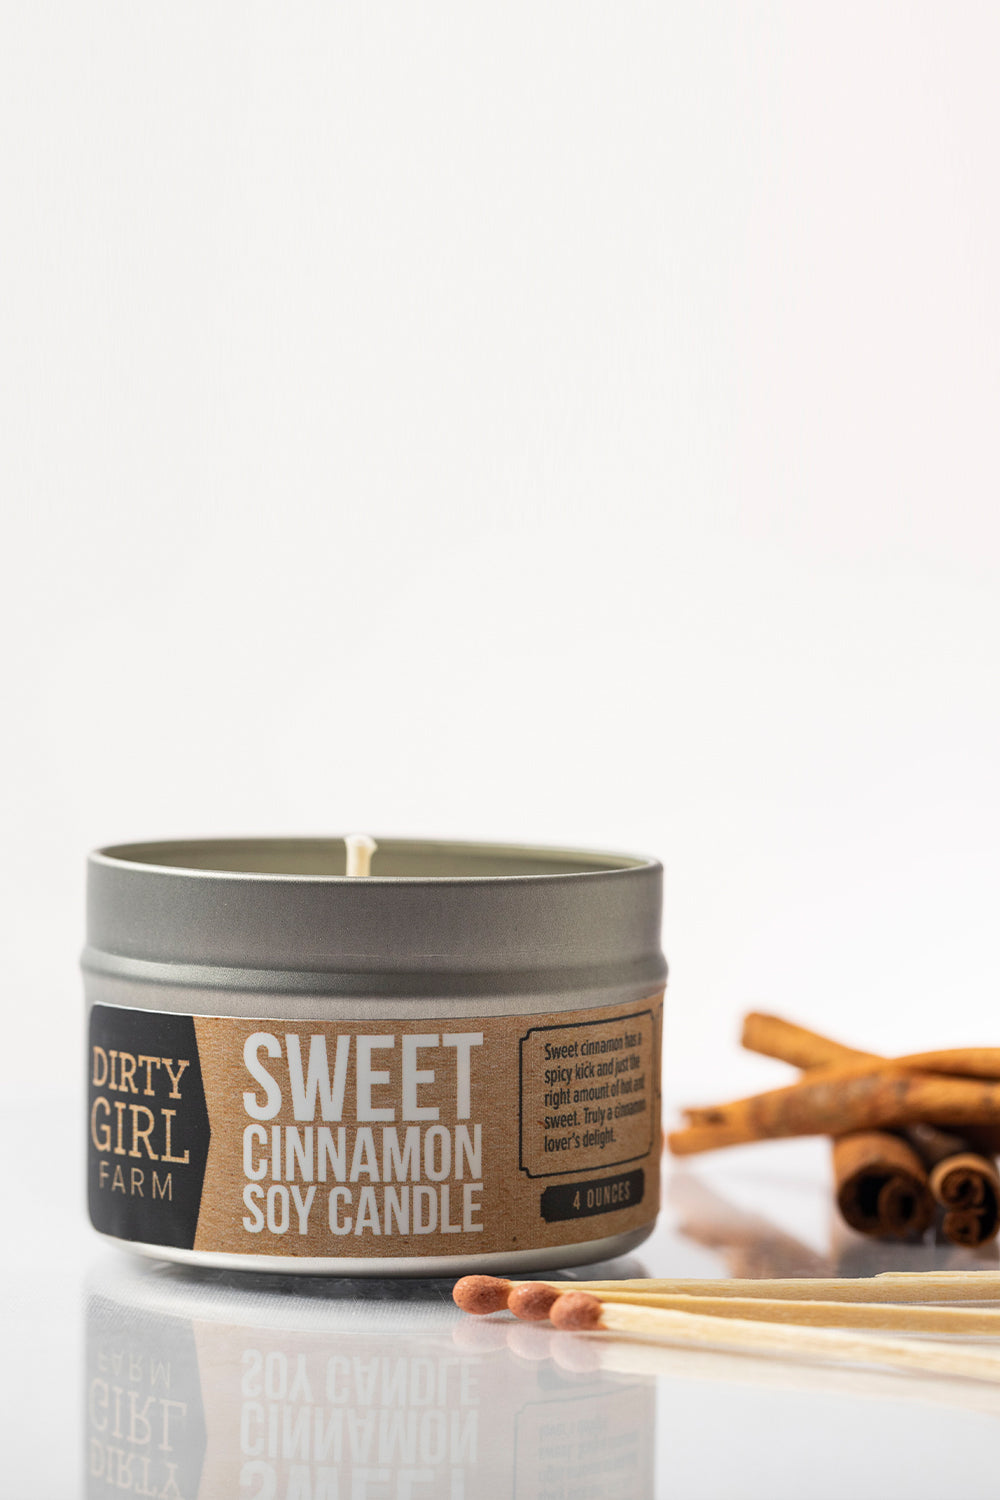 Sweet Cinnamon Soy Candle